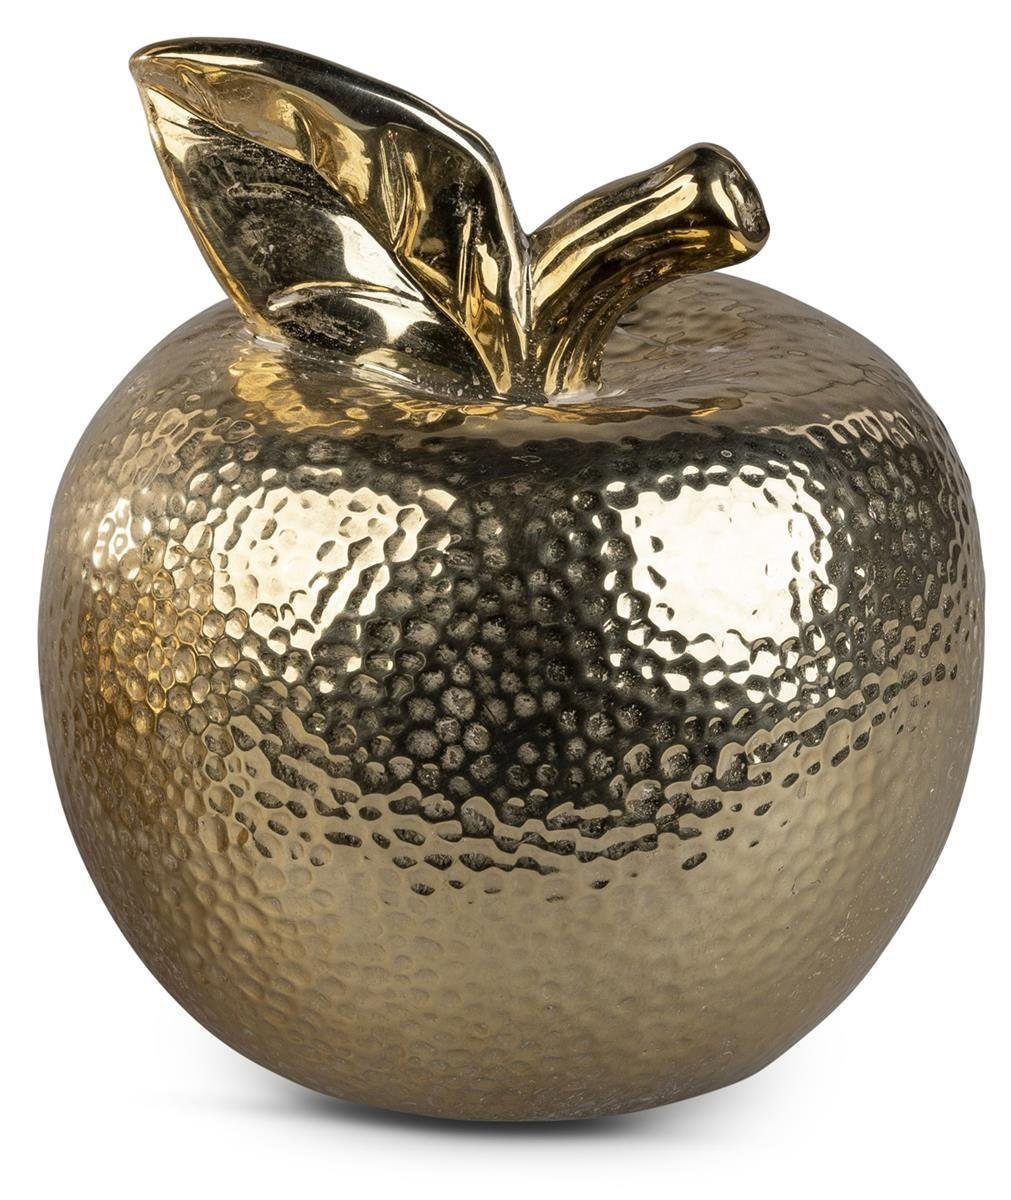 Wohnaccessoires Deko-Frucht Dekofigur dekojohnson cm 16 gold Deko-Apfel